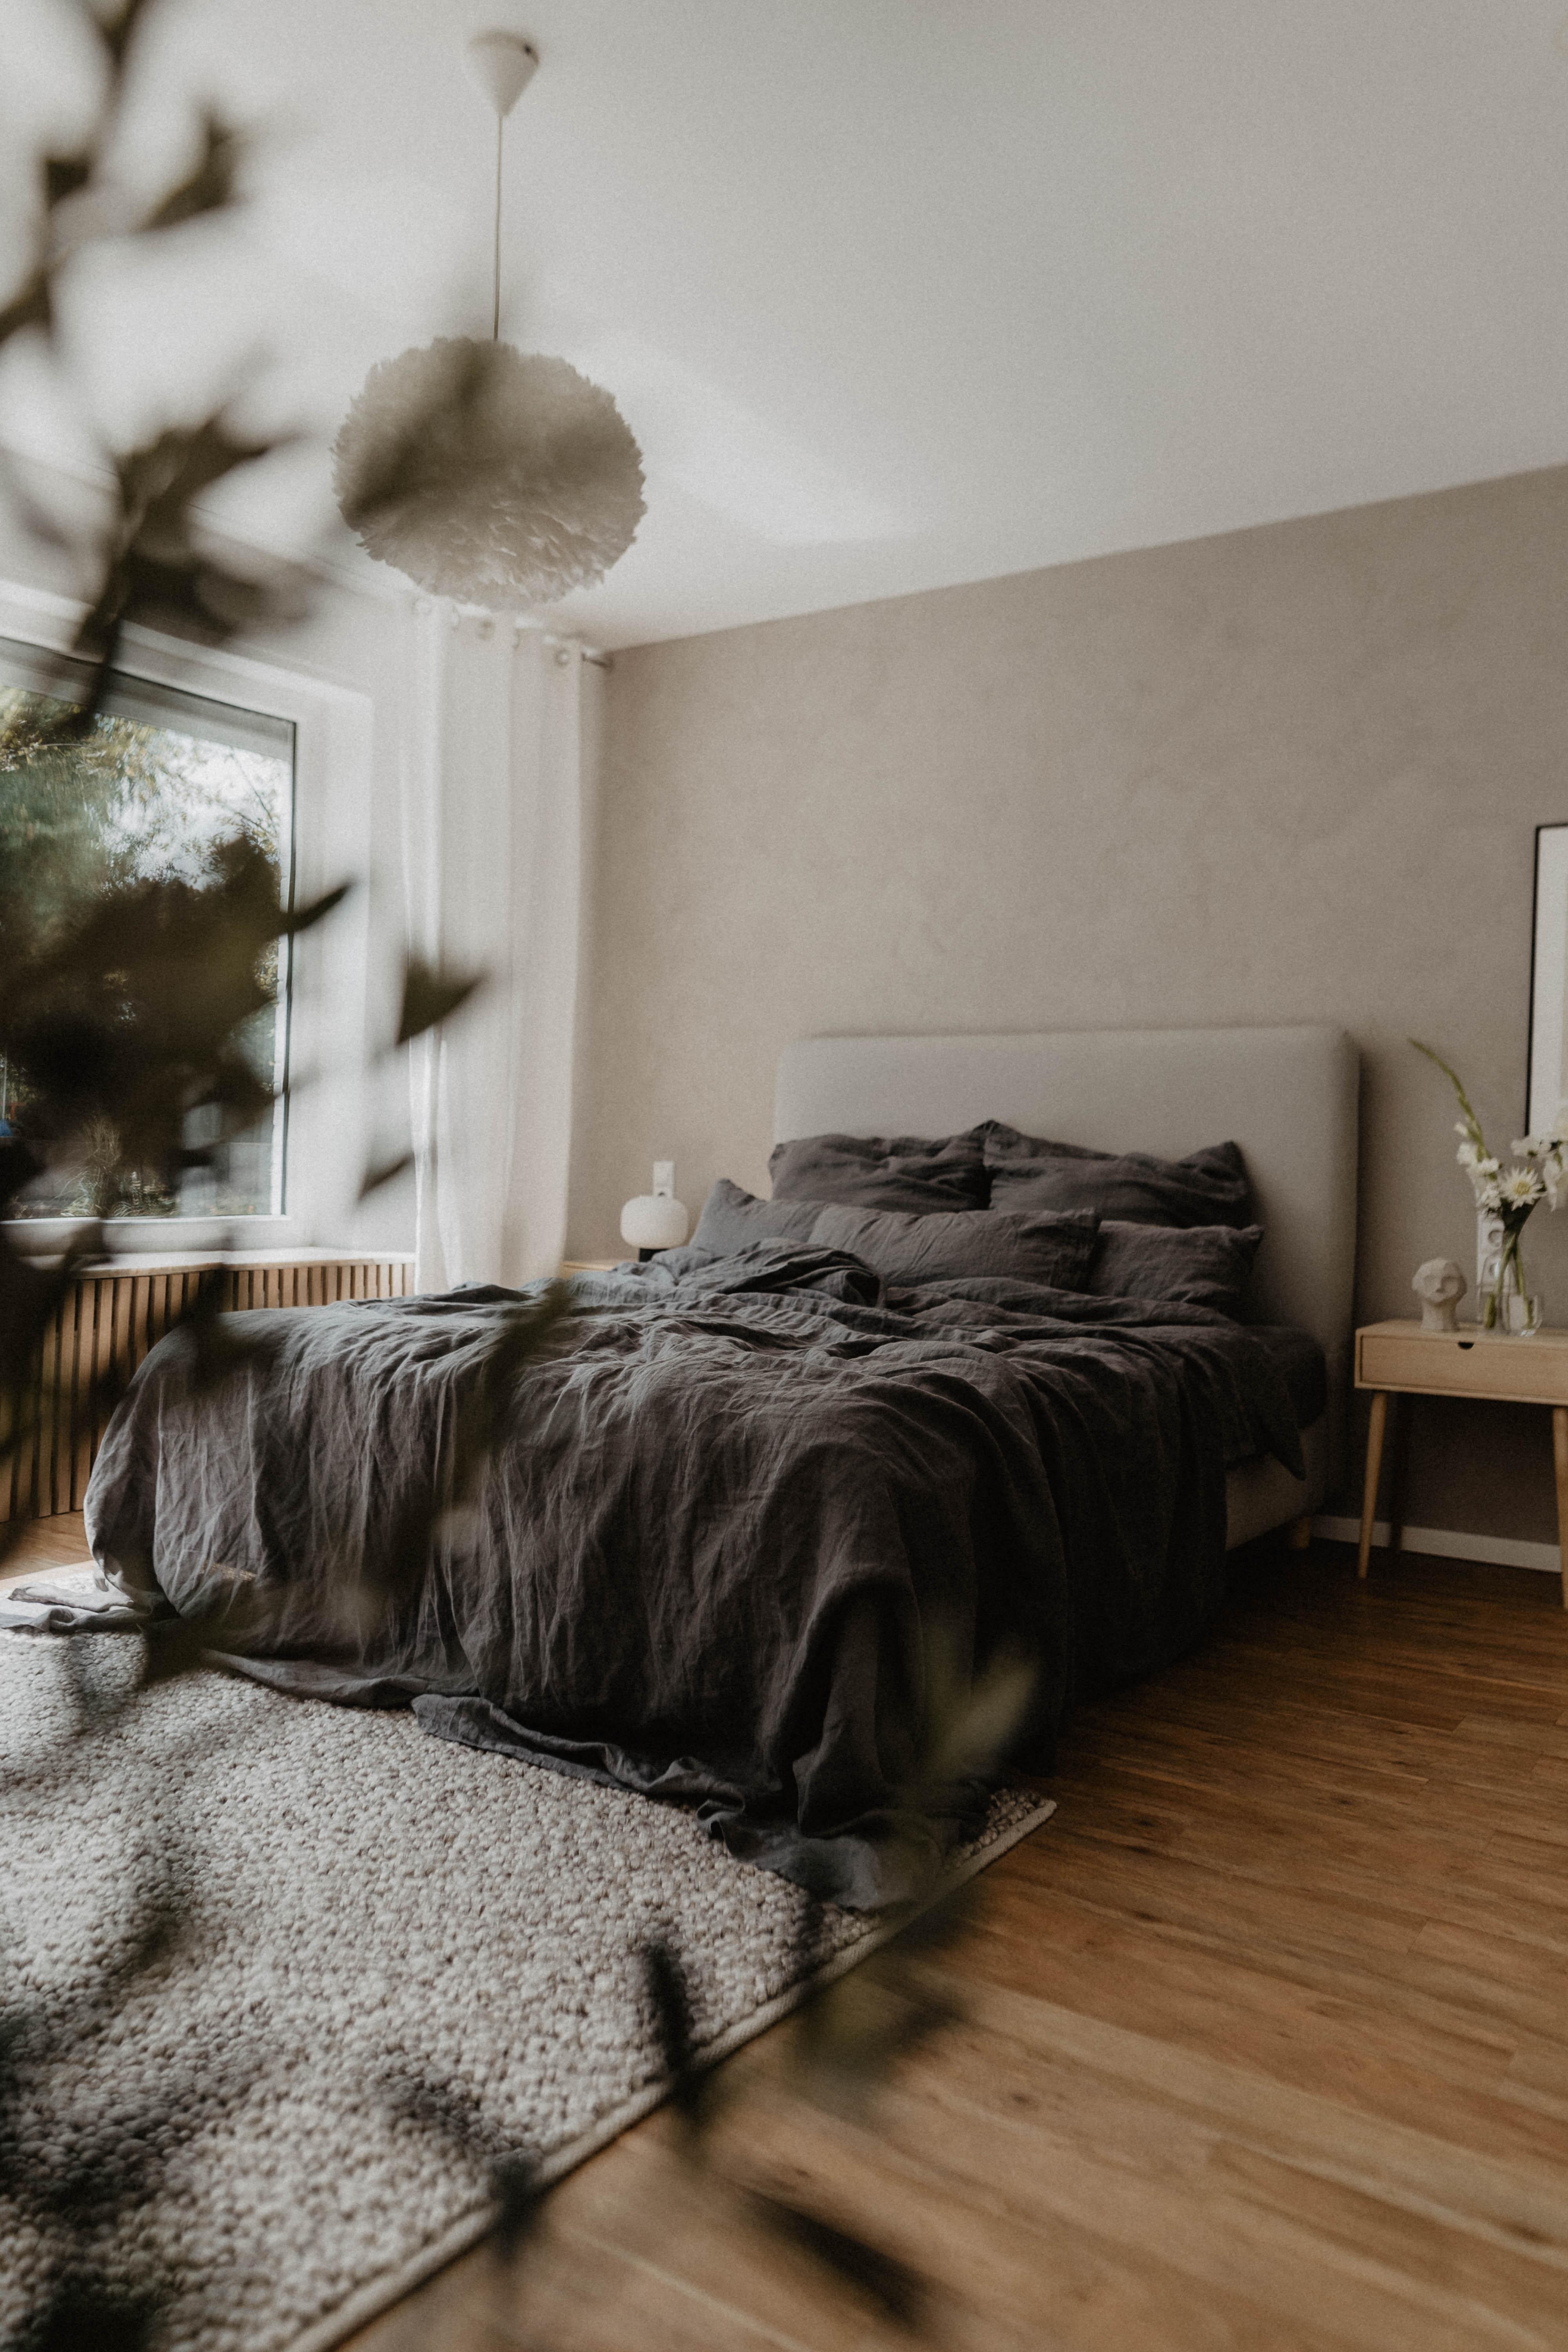 #bedroom #cozy #bedroomstyling #leinen #interior